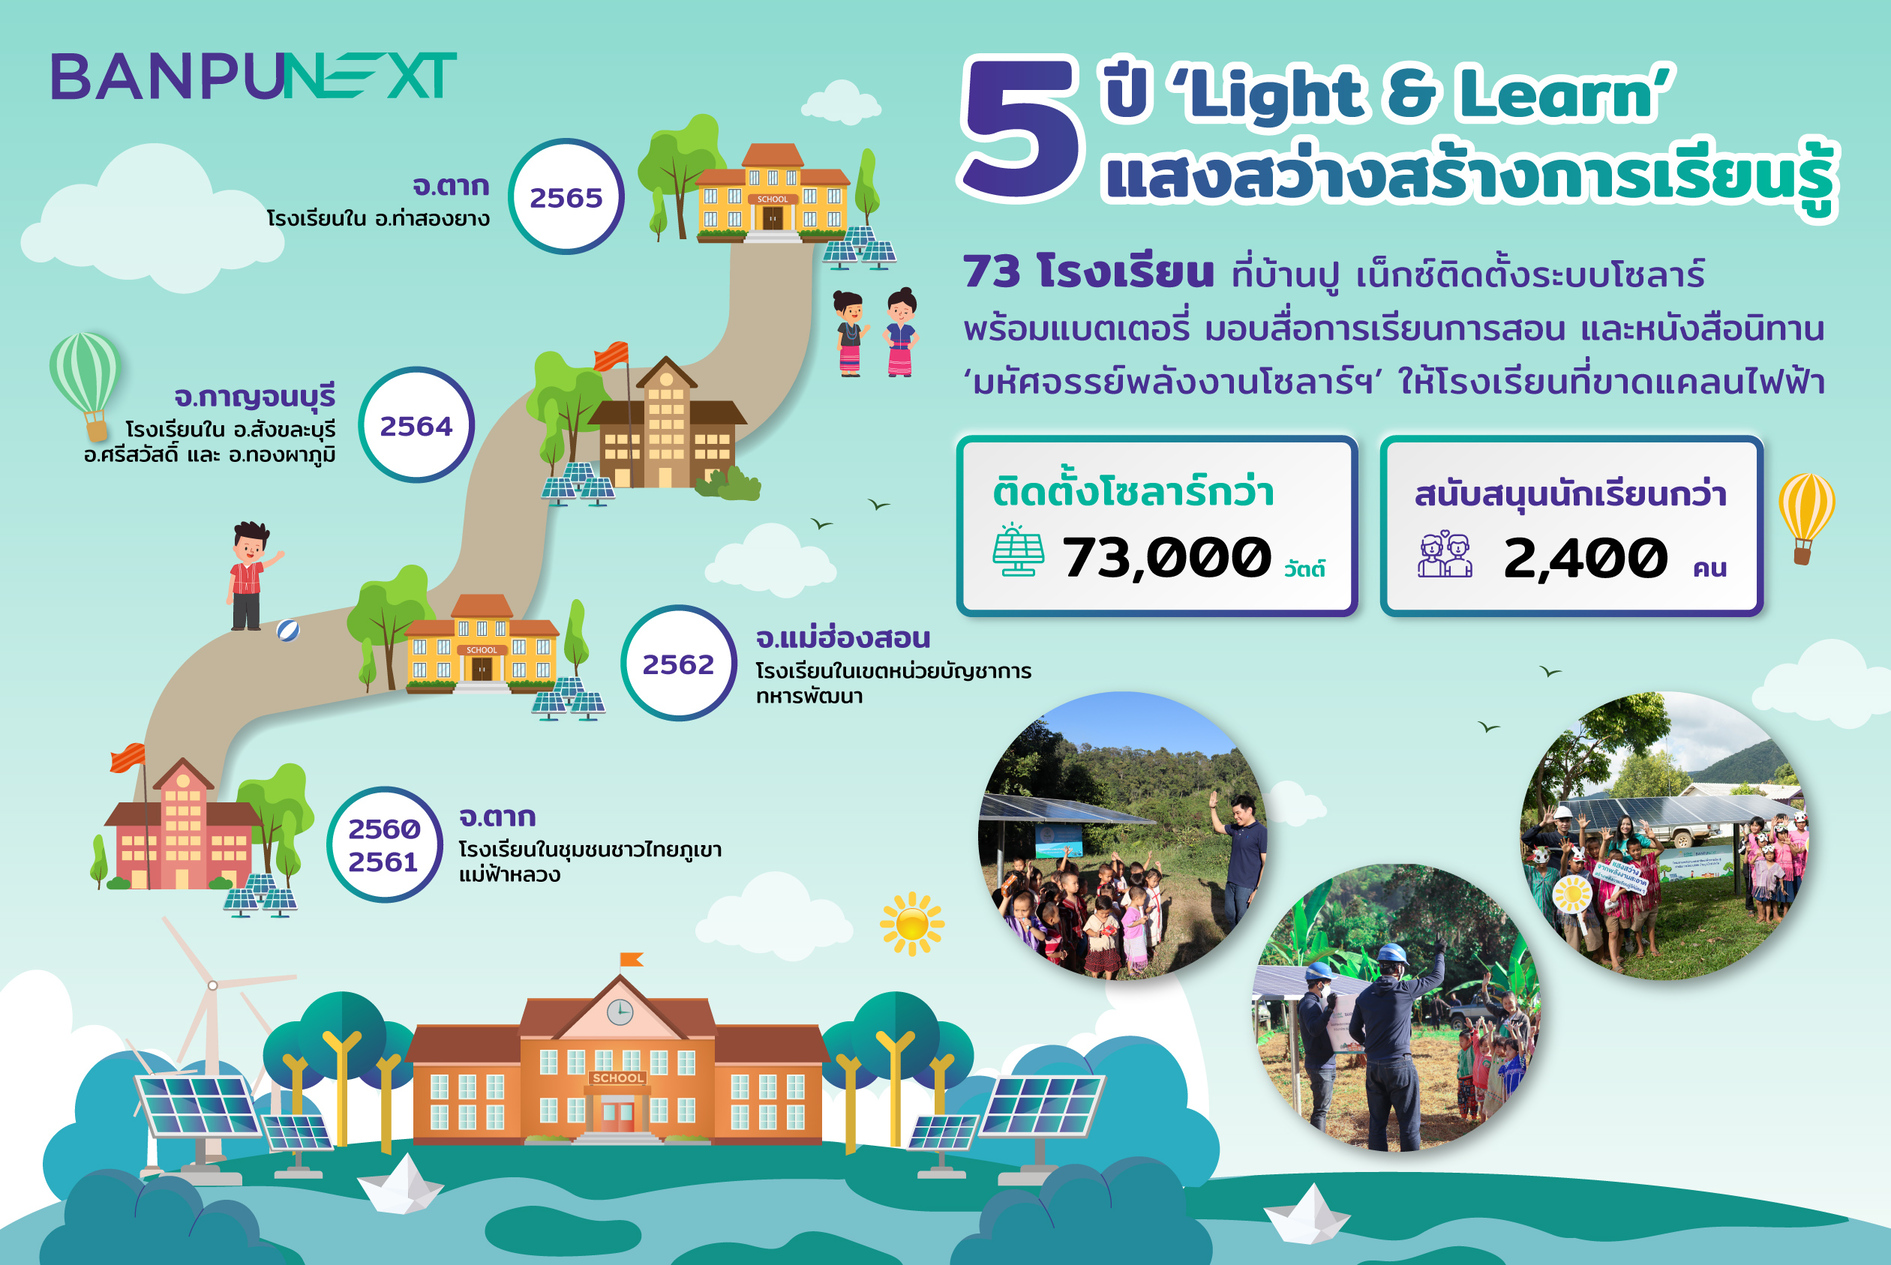 ปีที่ 5 โครงการ Light & Learn แสงสว่างสร้างการเรียนรู้ โดยบ้านปู เน็กซ์ มอบโซลาร์ให้โรงเรียนที่ขาดแคลนไฟฟ้าในพื้นที่ห่างไกลอย่างต่อเนื่อง รวม 73 โรงเรียน